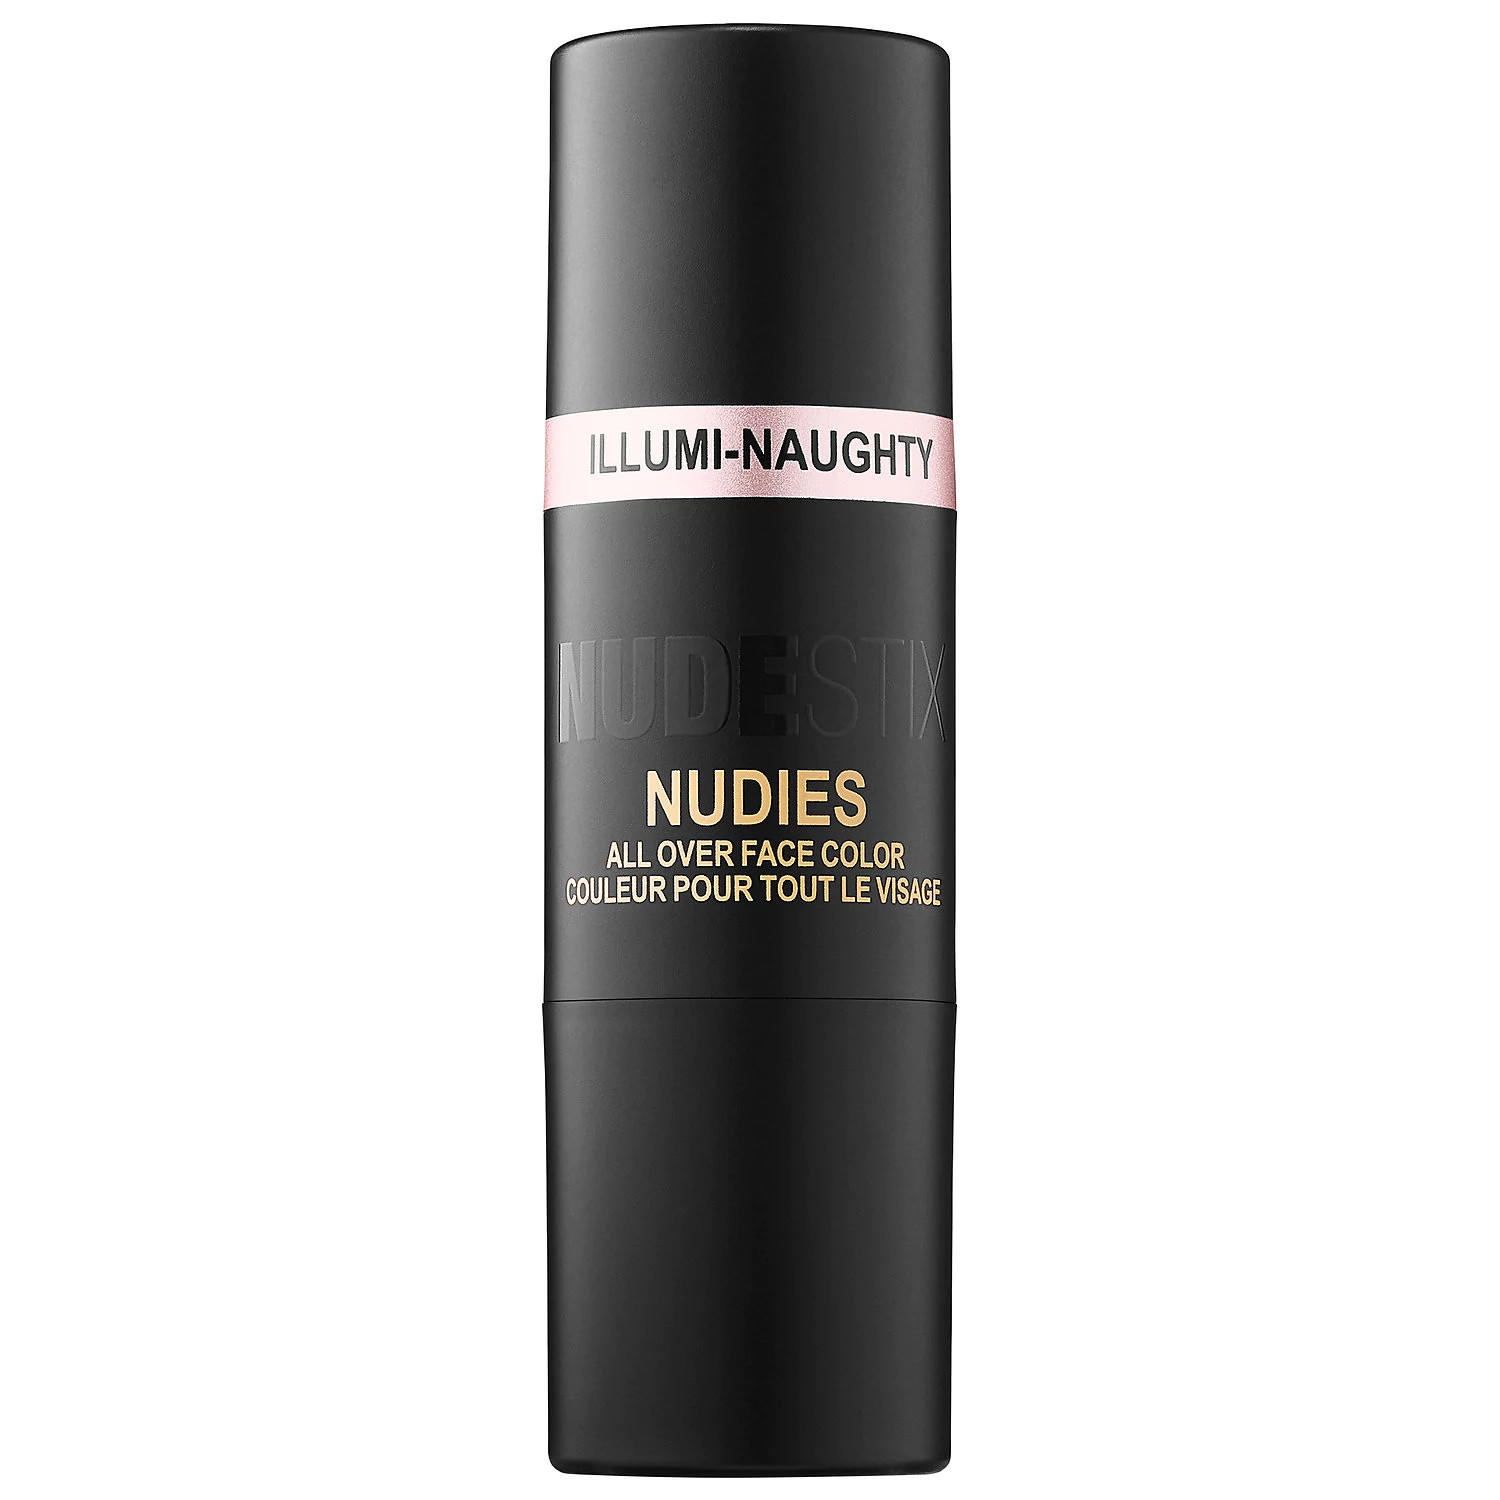 NUDESTIX Nudies All Over Face Color Bronze + Glow Illumi-Naughty